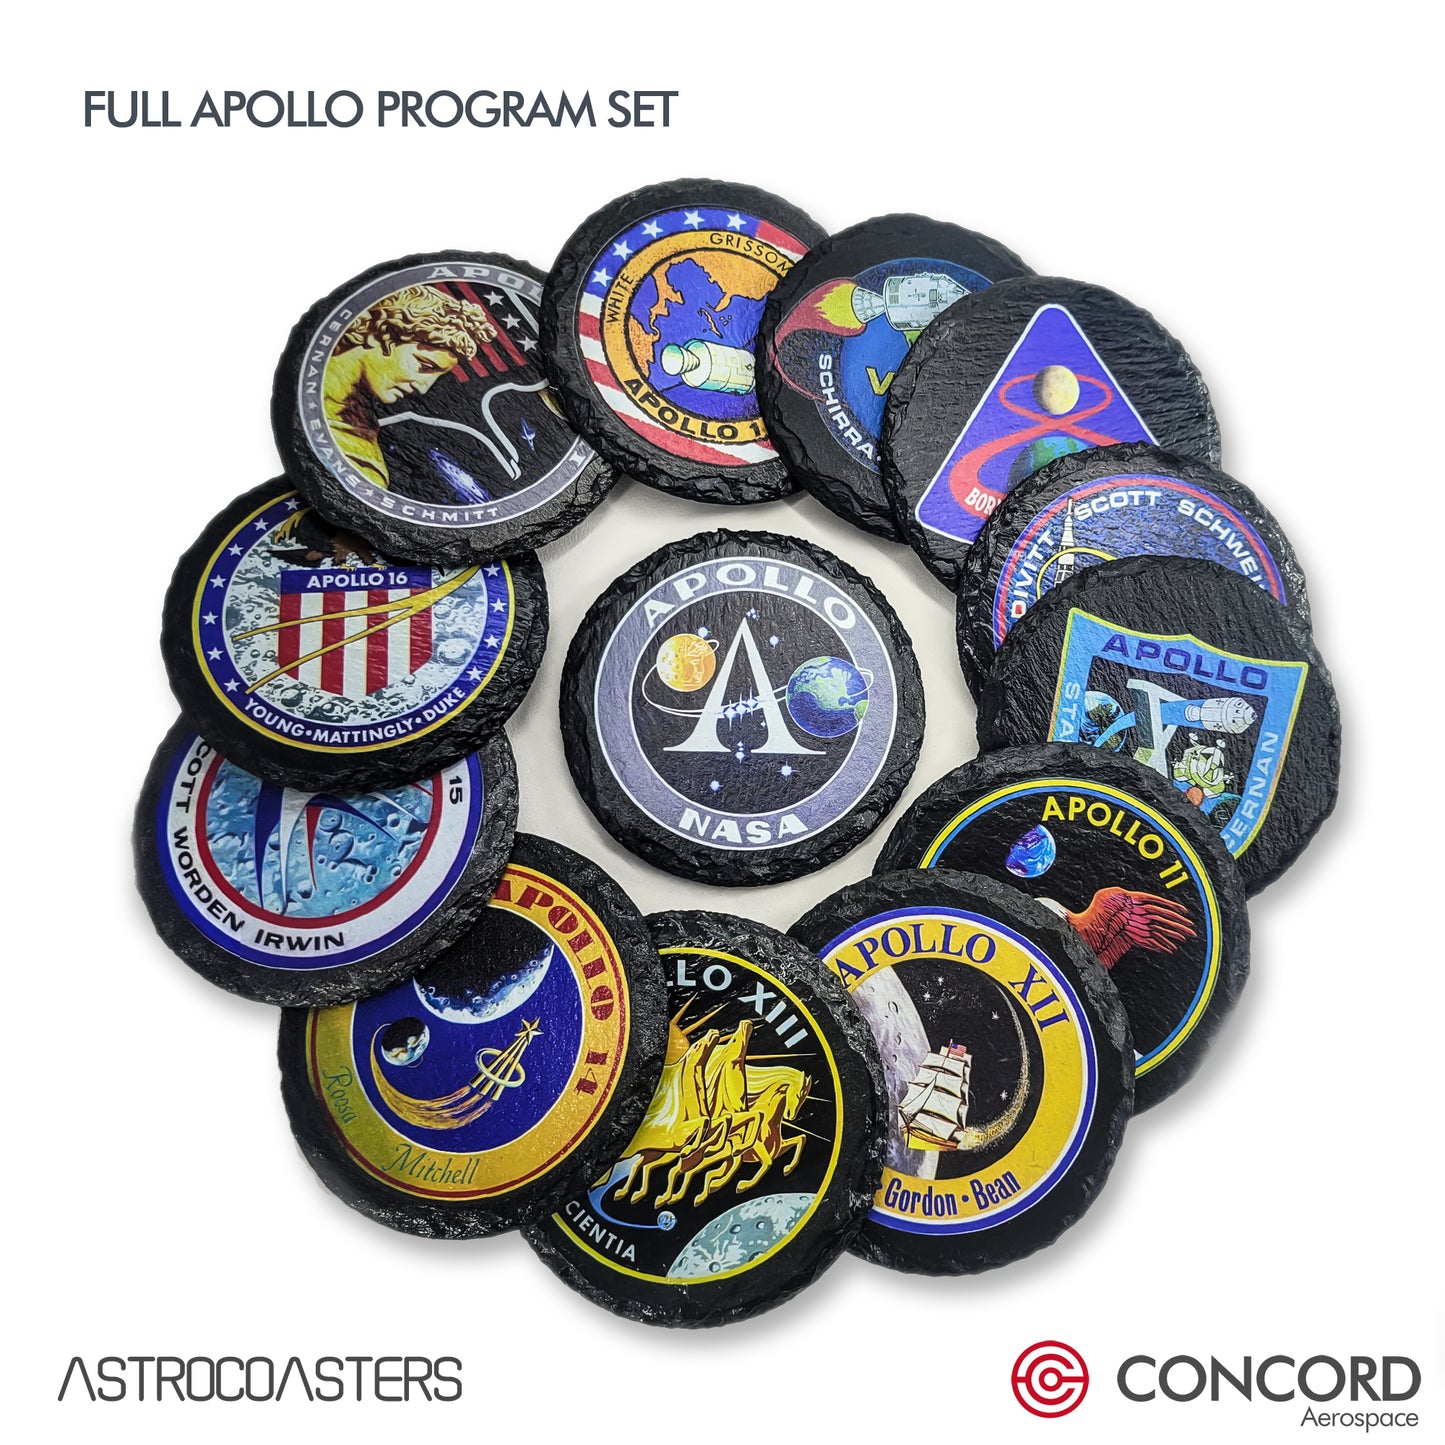 APOLLO 13 MISSION - SLATE COASTER - Concord Aerospace Concord Aerospace Concord Aerospace Coasters